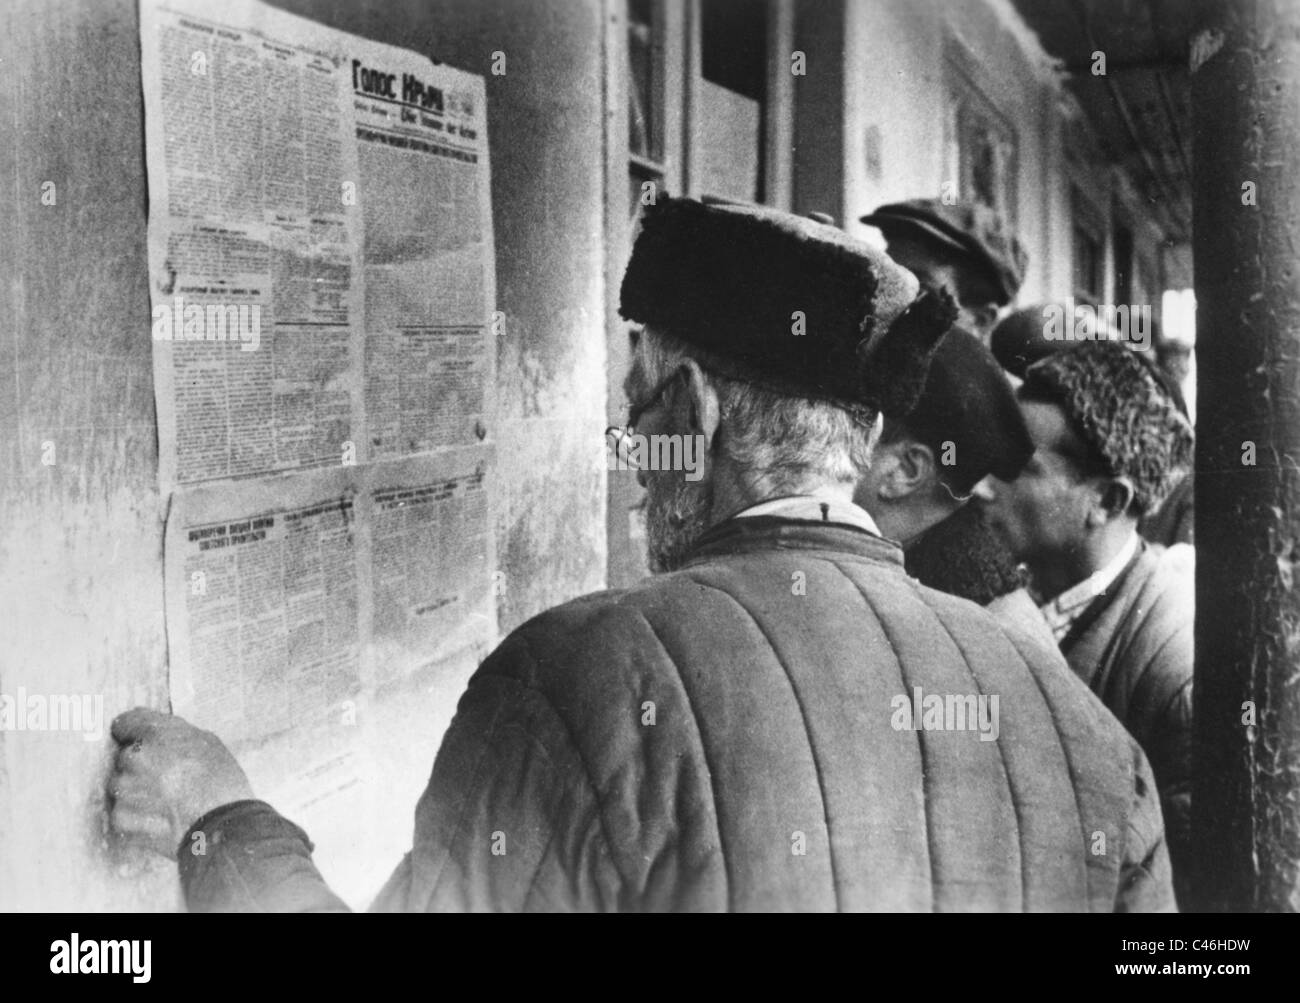 La seconda guerra mondiale: Tedesco Propaganda nazista occupato in Unione Sovietica Foto Stock